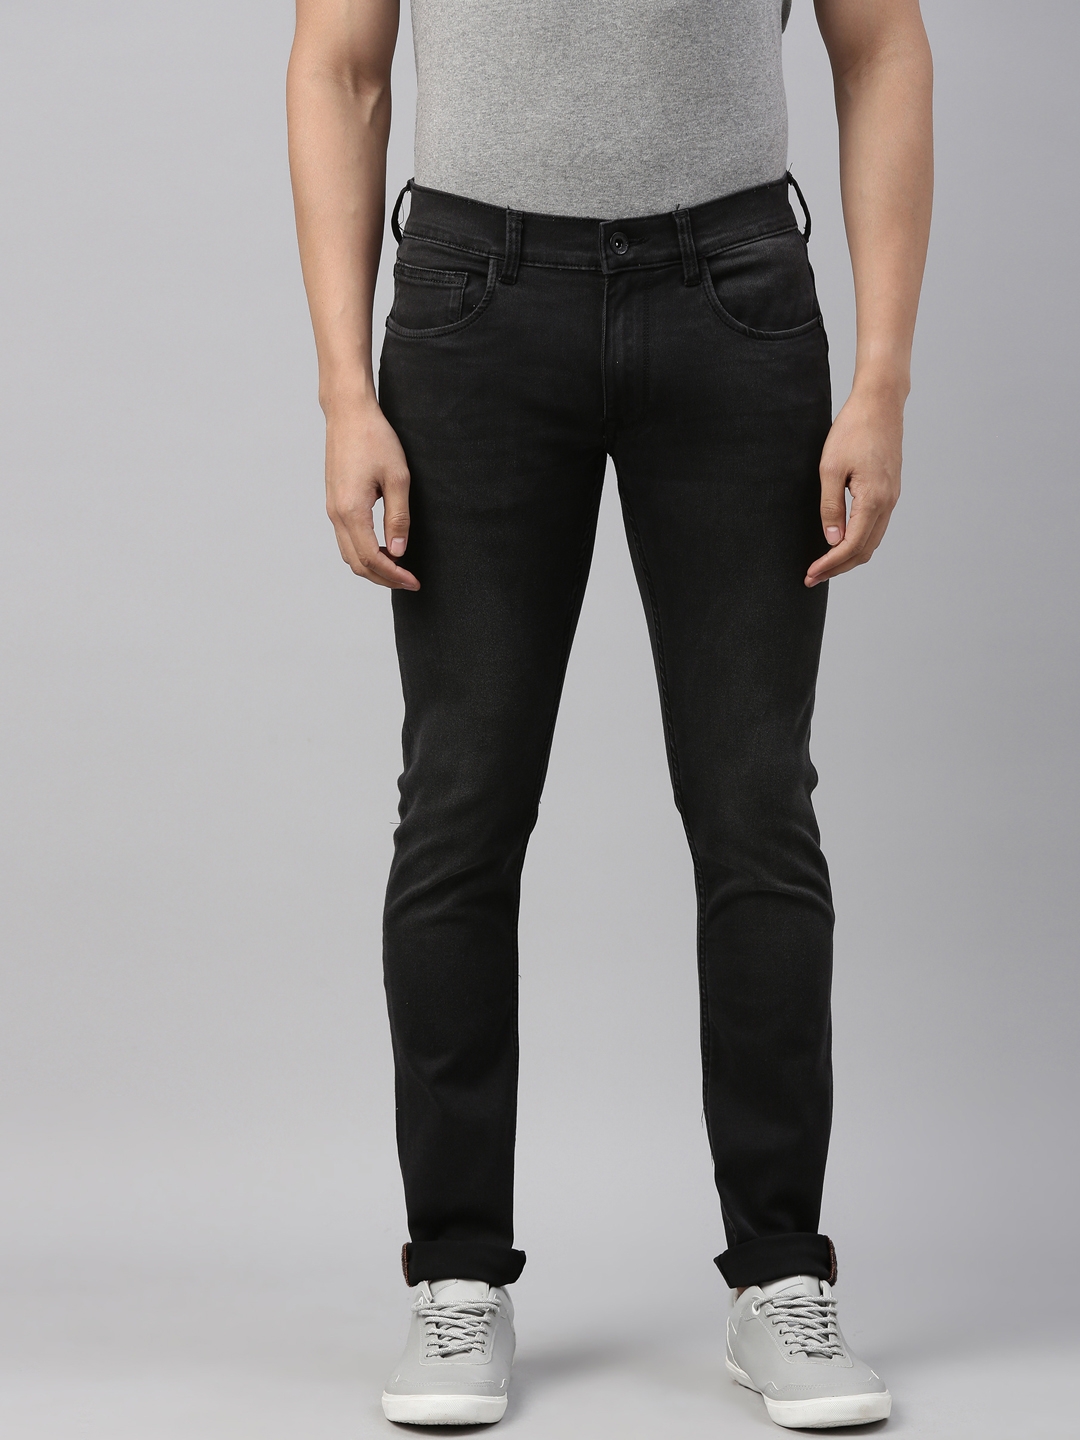 American Bull | American Bull Mens Solid Full length Denim Jeans 0